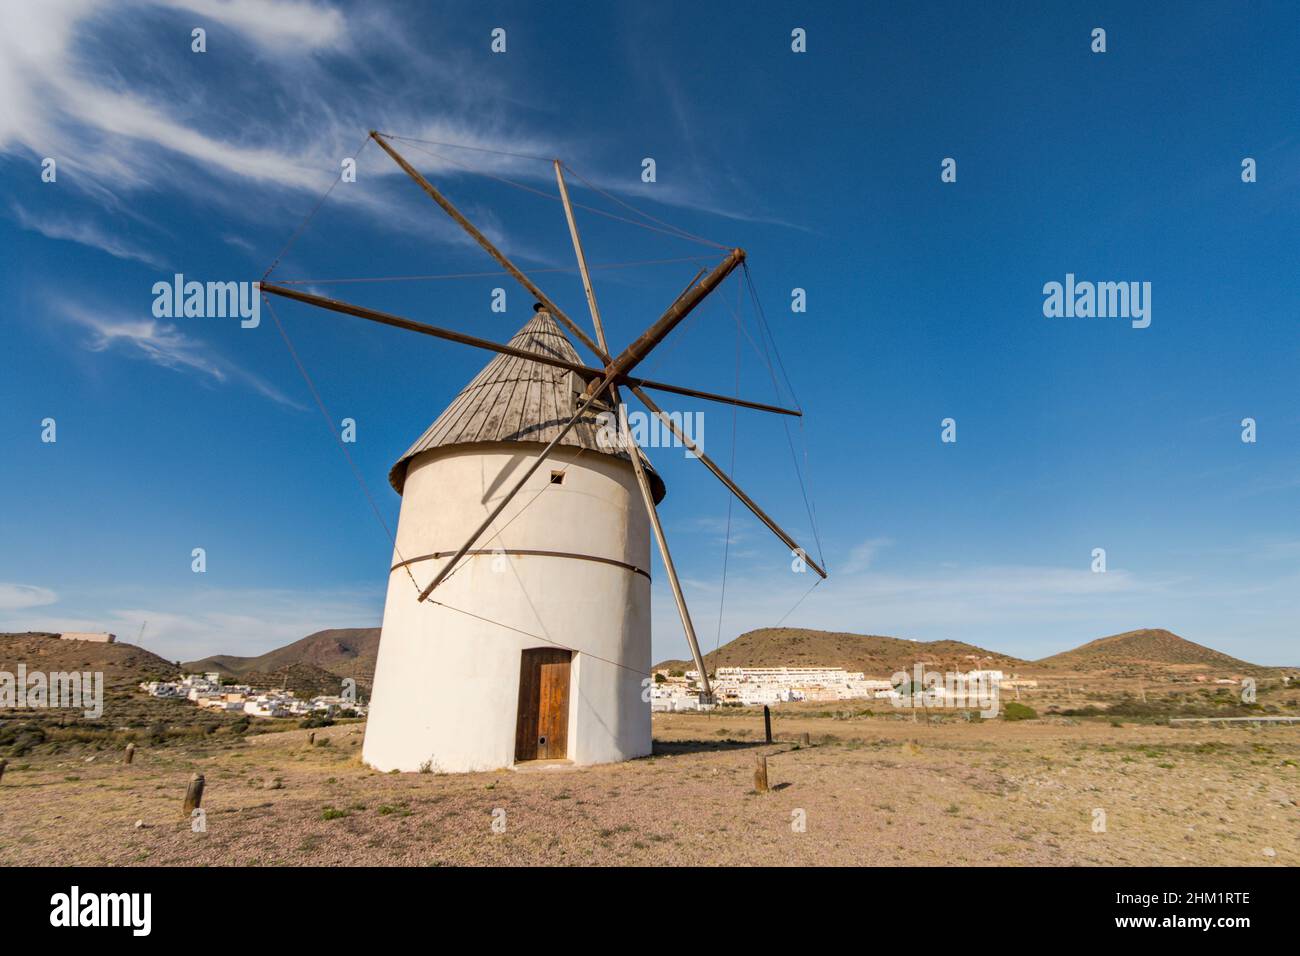 Cabo de Gata Spain. Old restored Spanish windmill in El Pozo de los Frailes, Almeria, Andalucia, Spain. Stock Photo